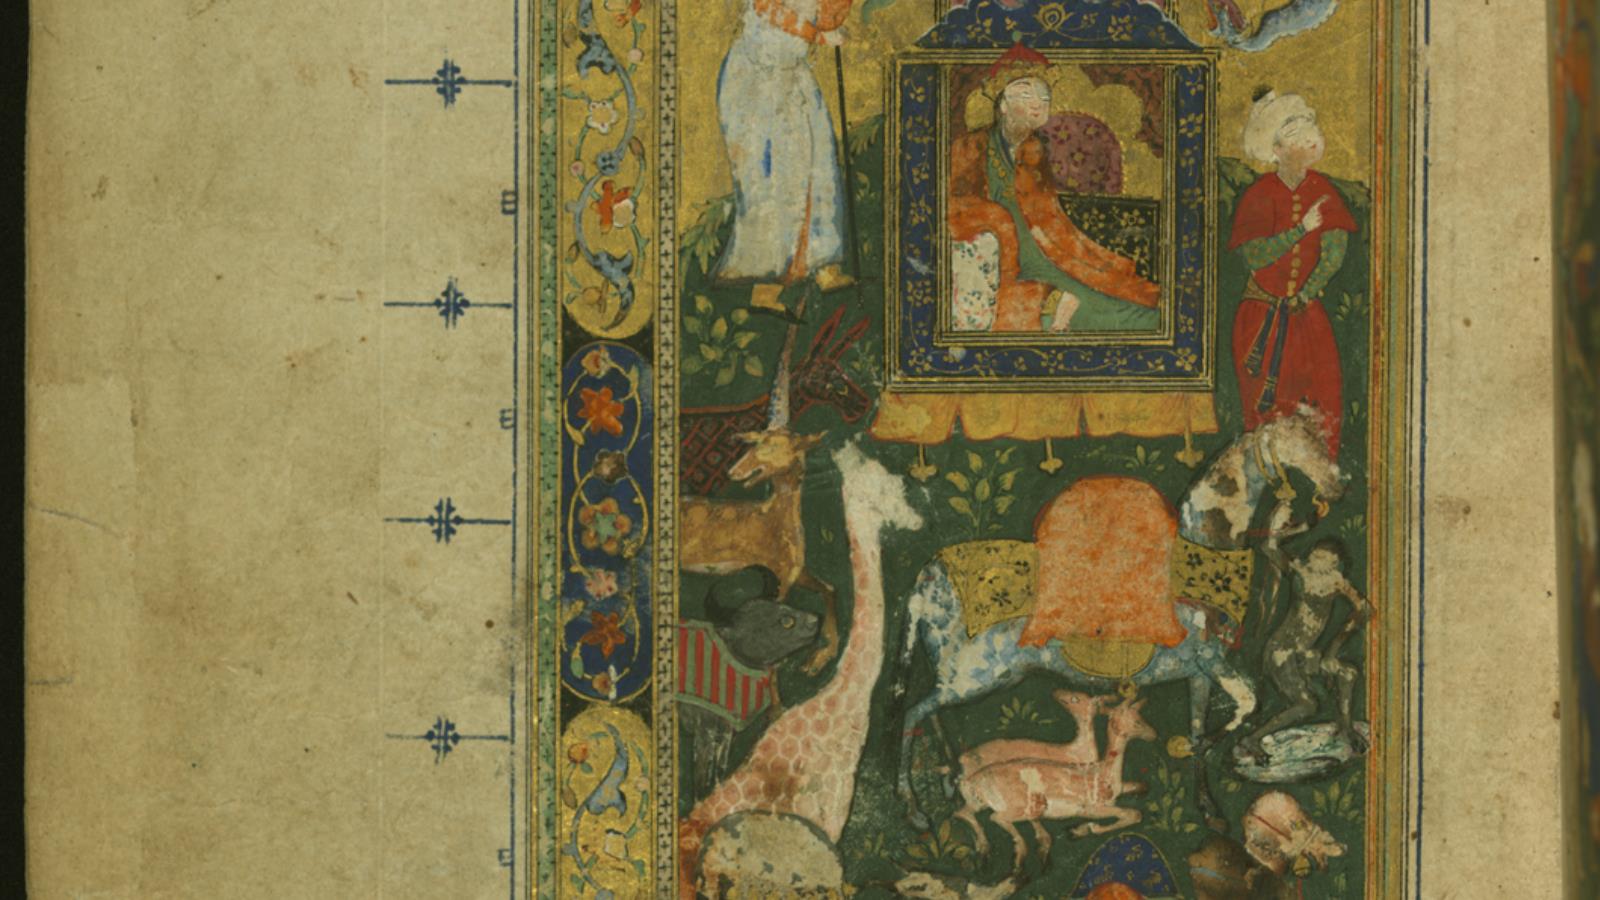 ‪رسم تخيلي لملكة سبأ في مخطوطة فارسية لديوان حافظ الشيرازي من القرن 16‬ (ويكي كومنز)